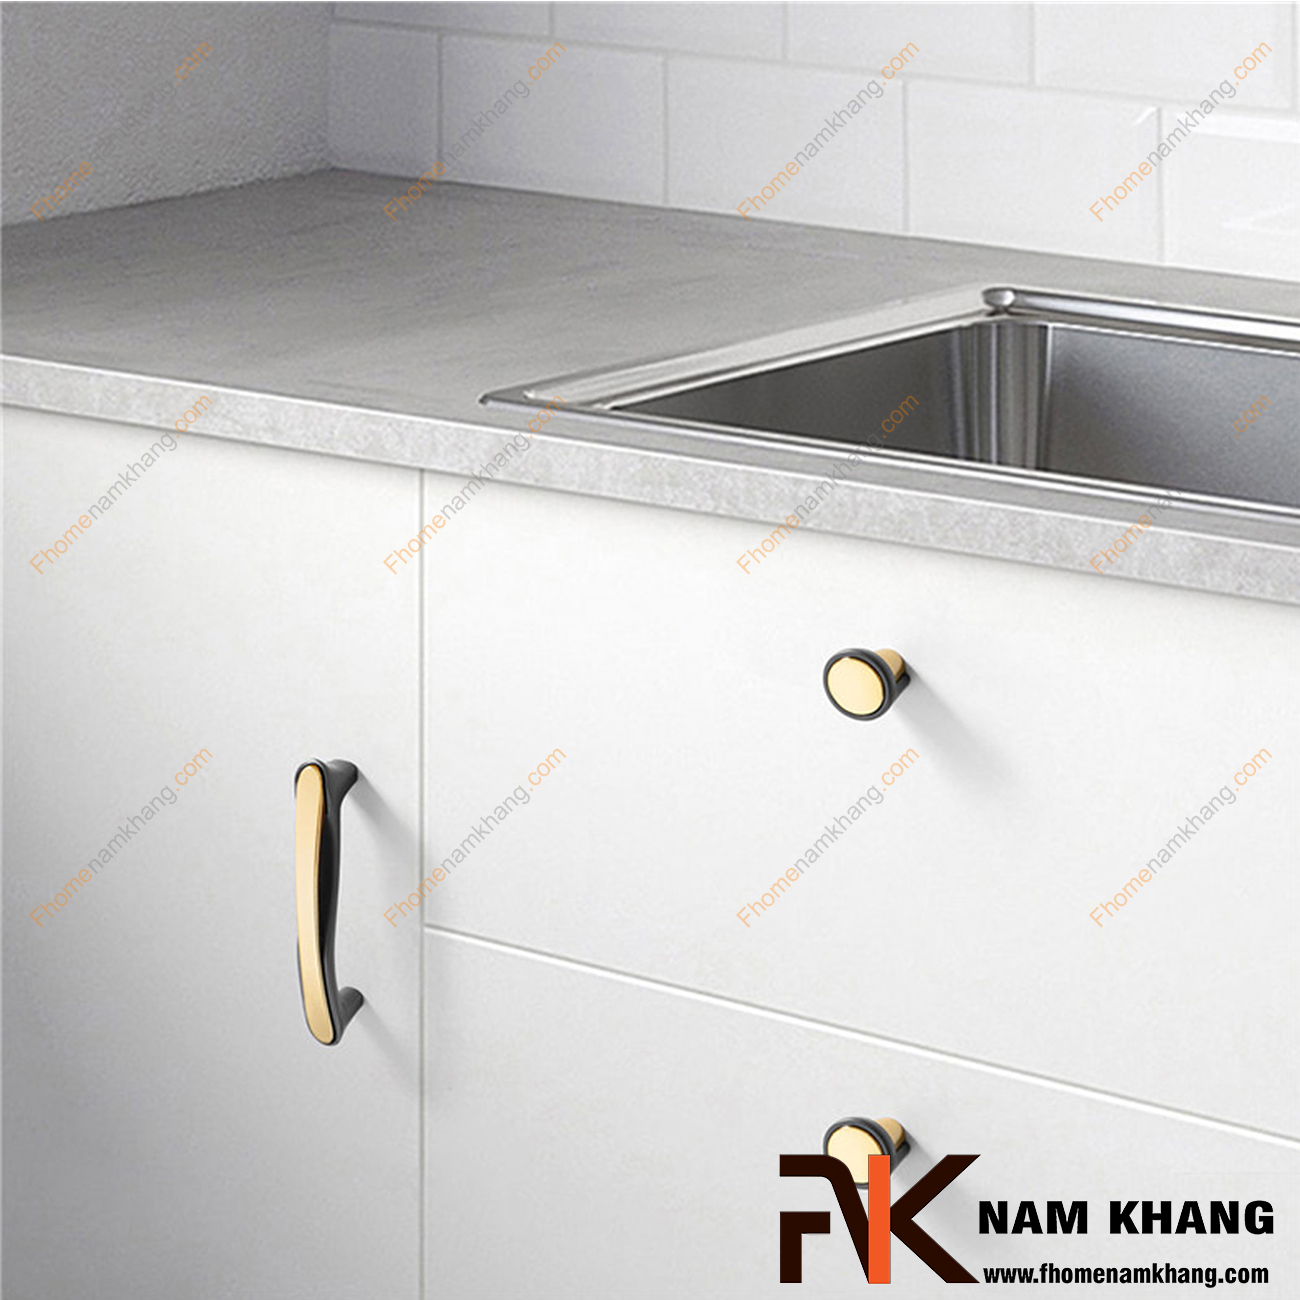 Núm cửa tủ phối hợp cao cấp xám vàng NK398-BXV nhỏ gọn, tiện lợi nhưng vẫn giữ được sự cao cấp, sang trọng. Đây là dòng sản phẩm phụ kiện trên cánh cửa tủ bếp, ngăn kệ, tủ nội thất, tủ trang sức.